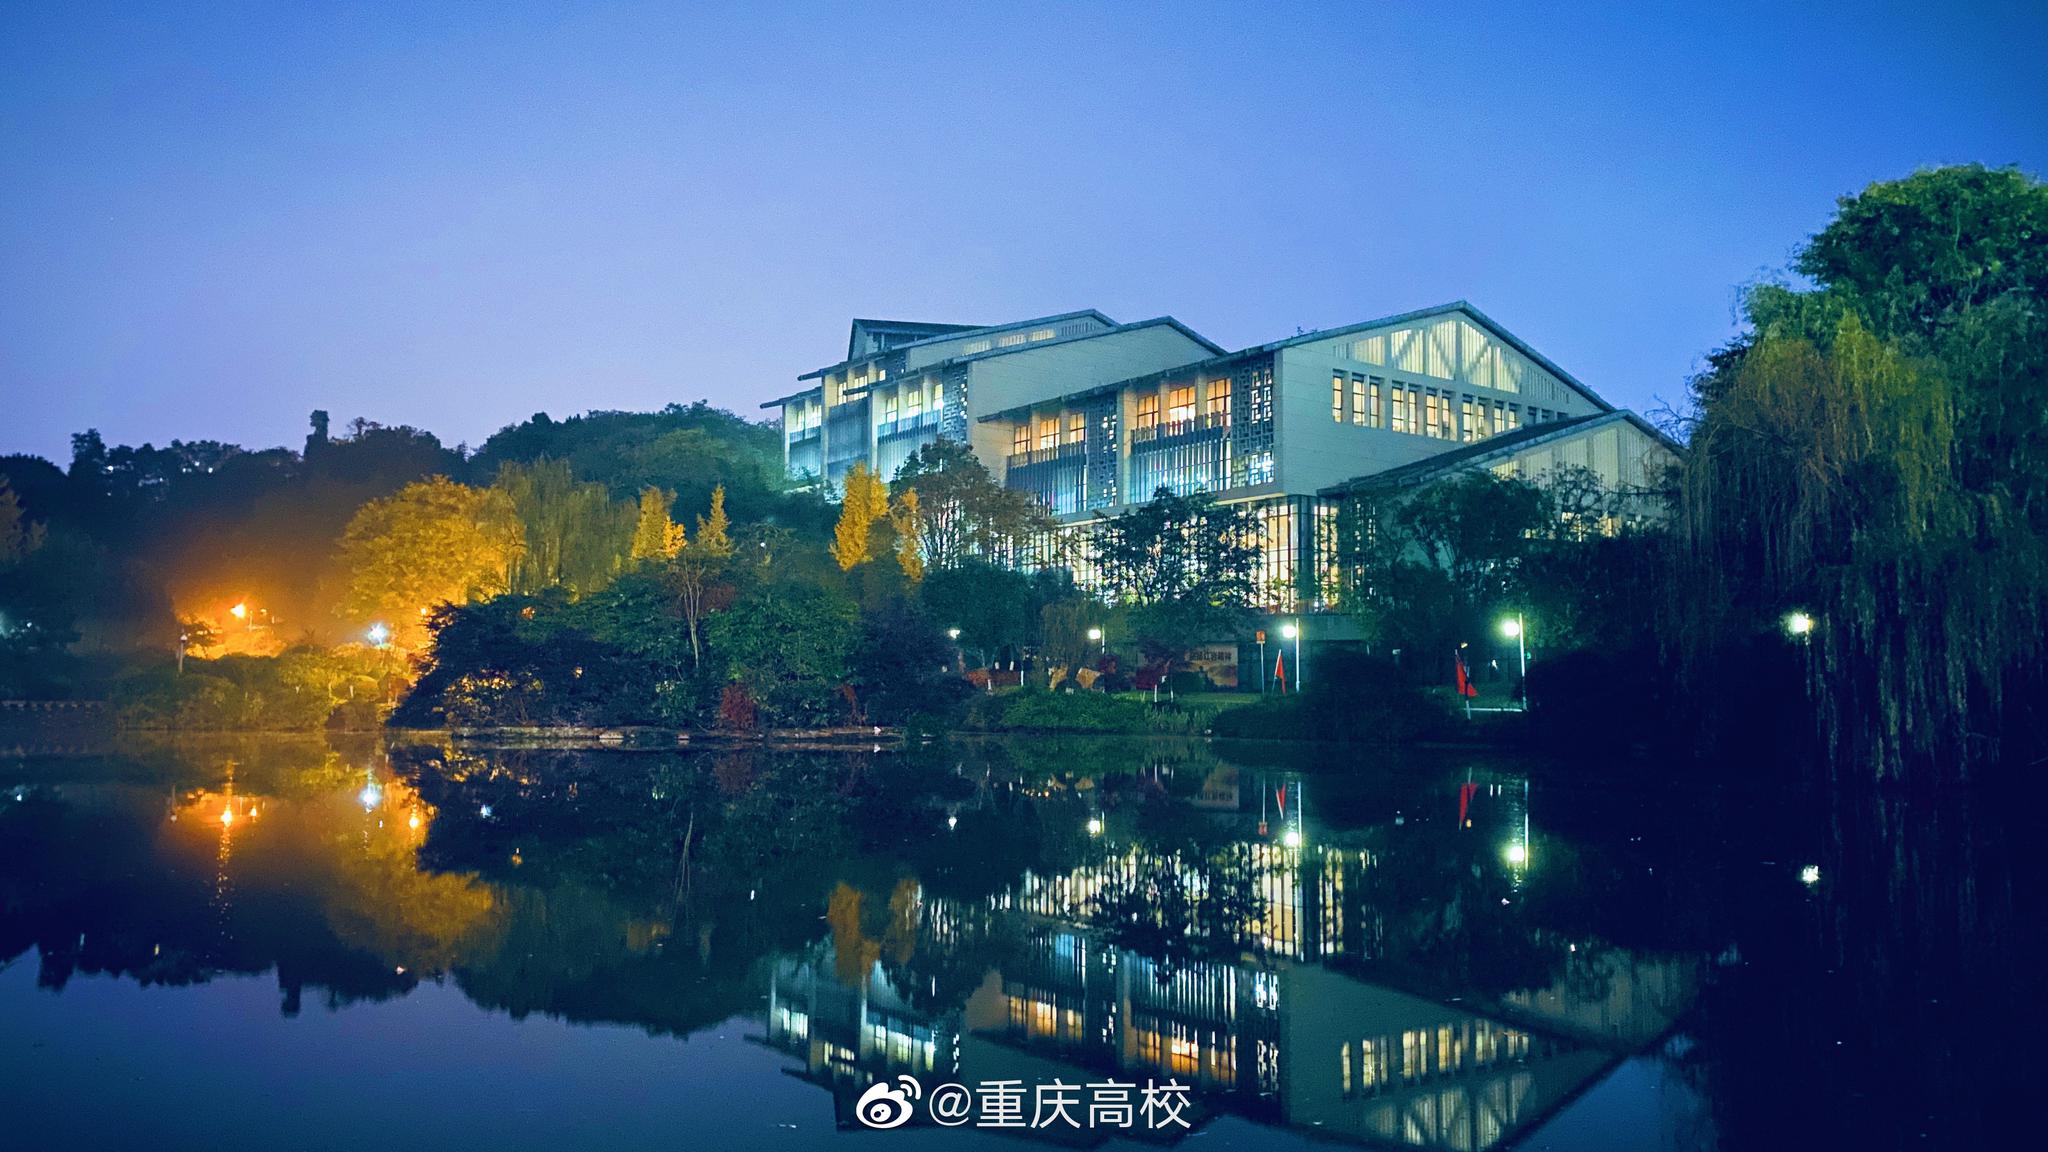 网友投稿,分享一波重庆理工大学的美景